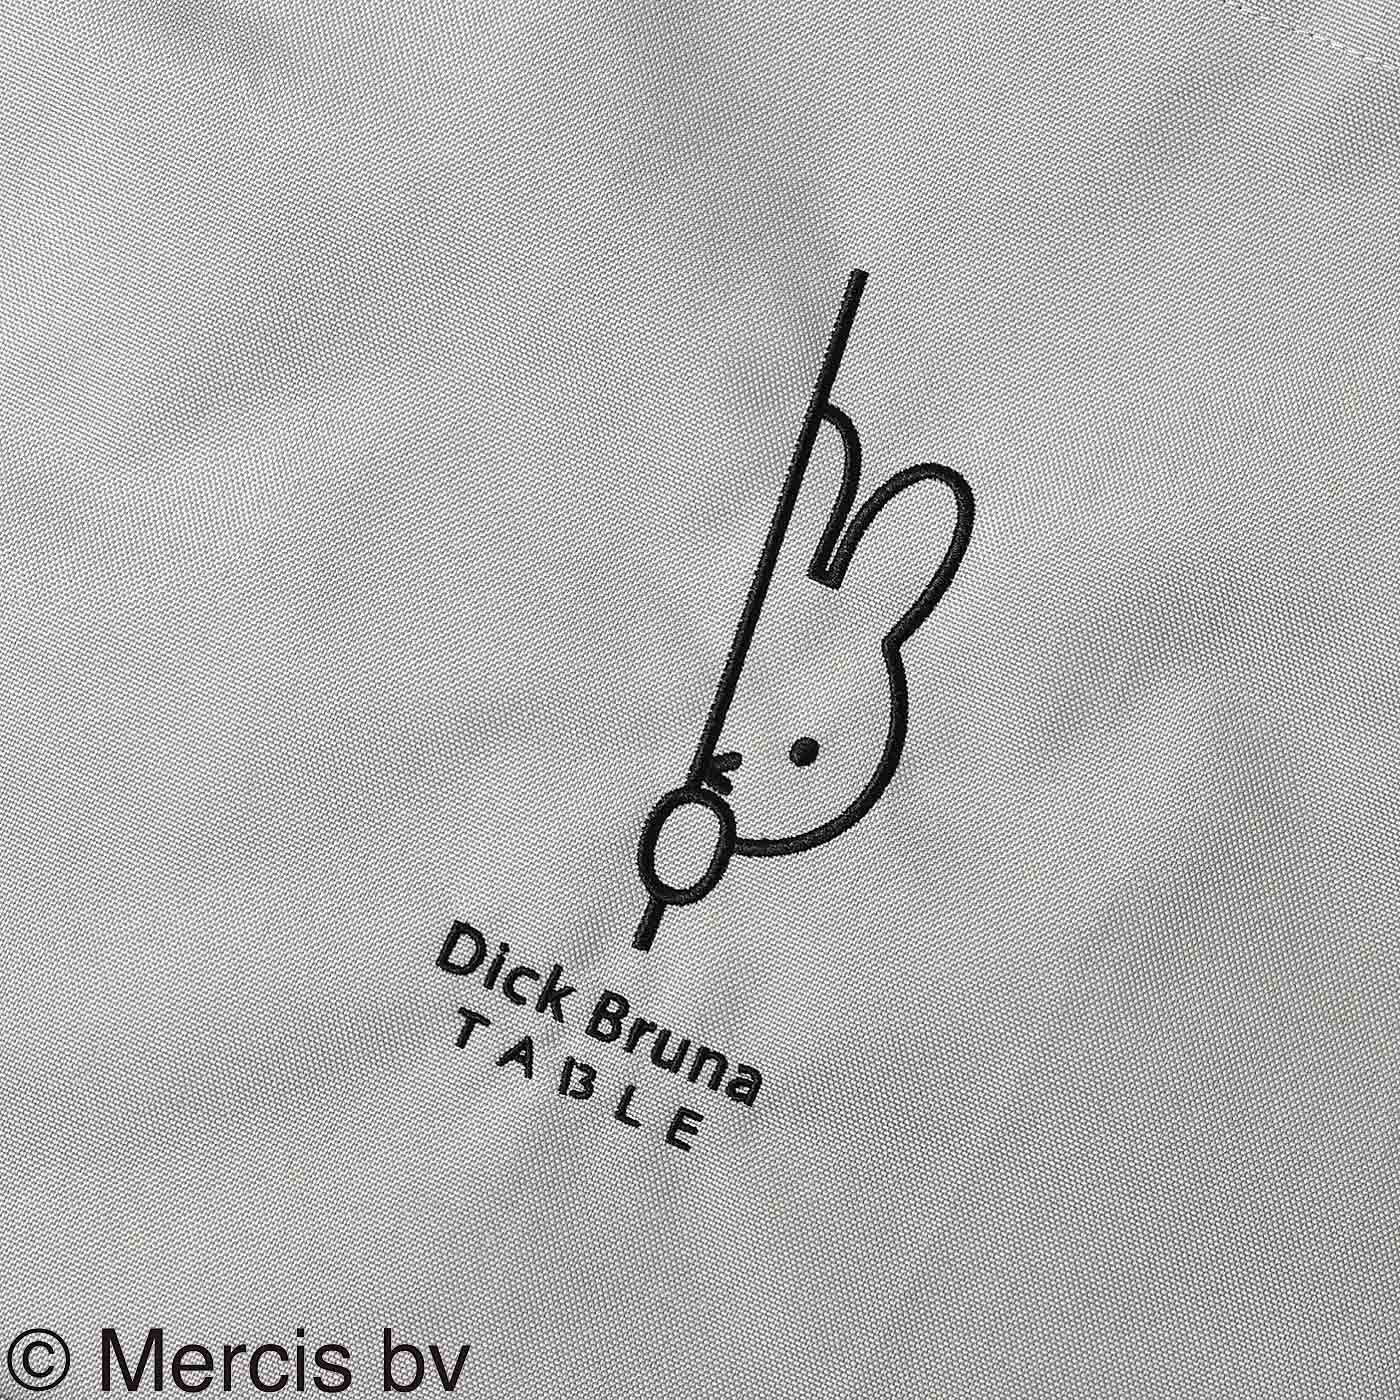 ディック・ブルーナ テーブル|Dick Bruna TABLE  刺しゅうバッグ〈グレー〉|正面に大きく、Dick Bruna TABLEのワンポイント刺しゅう入り